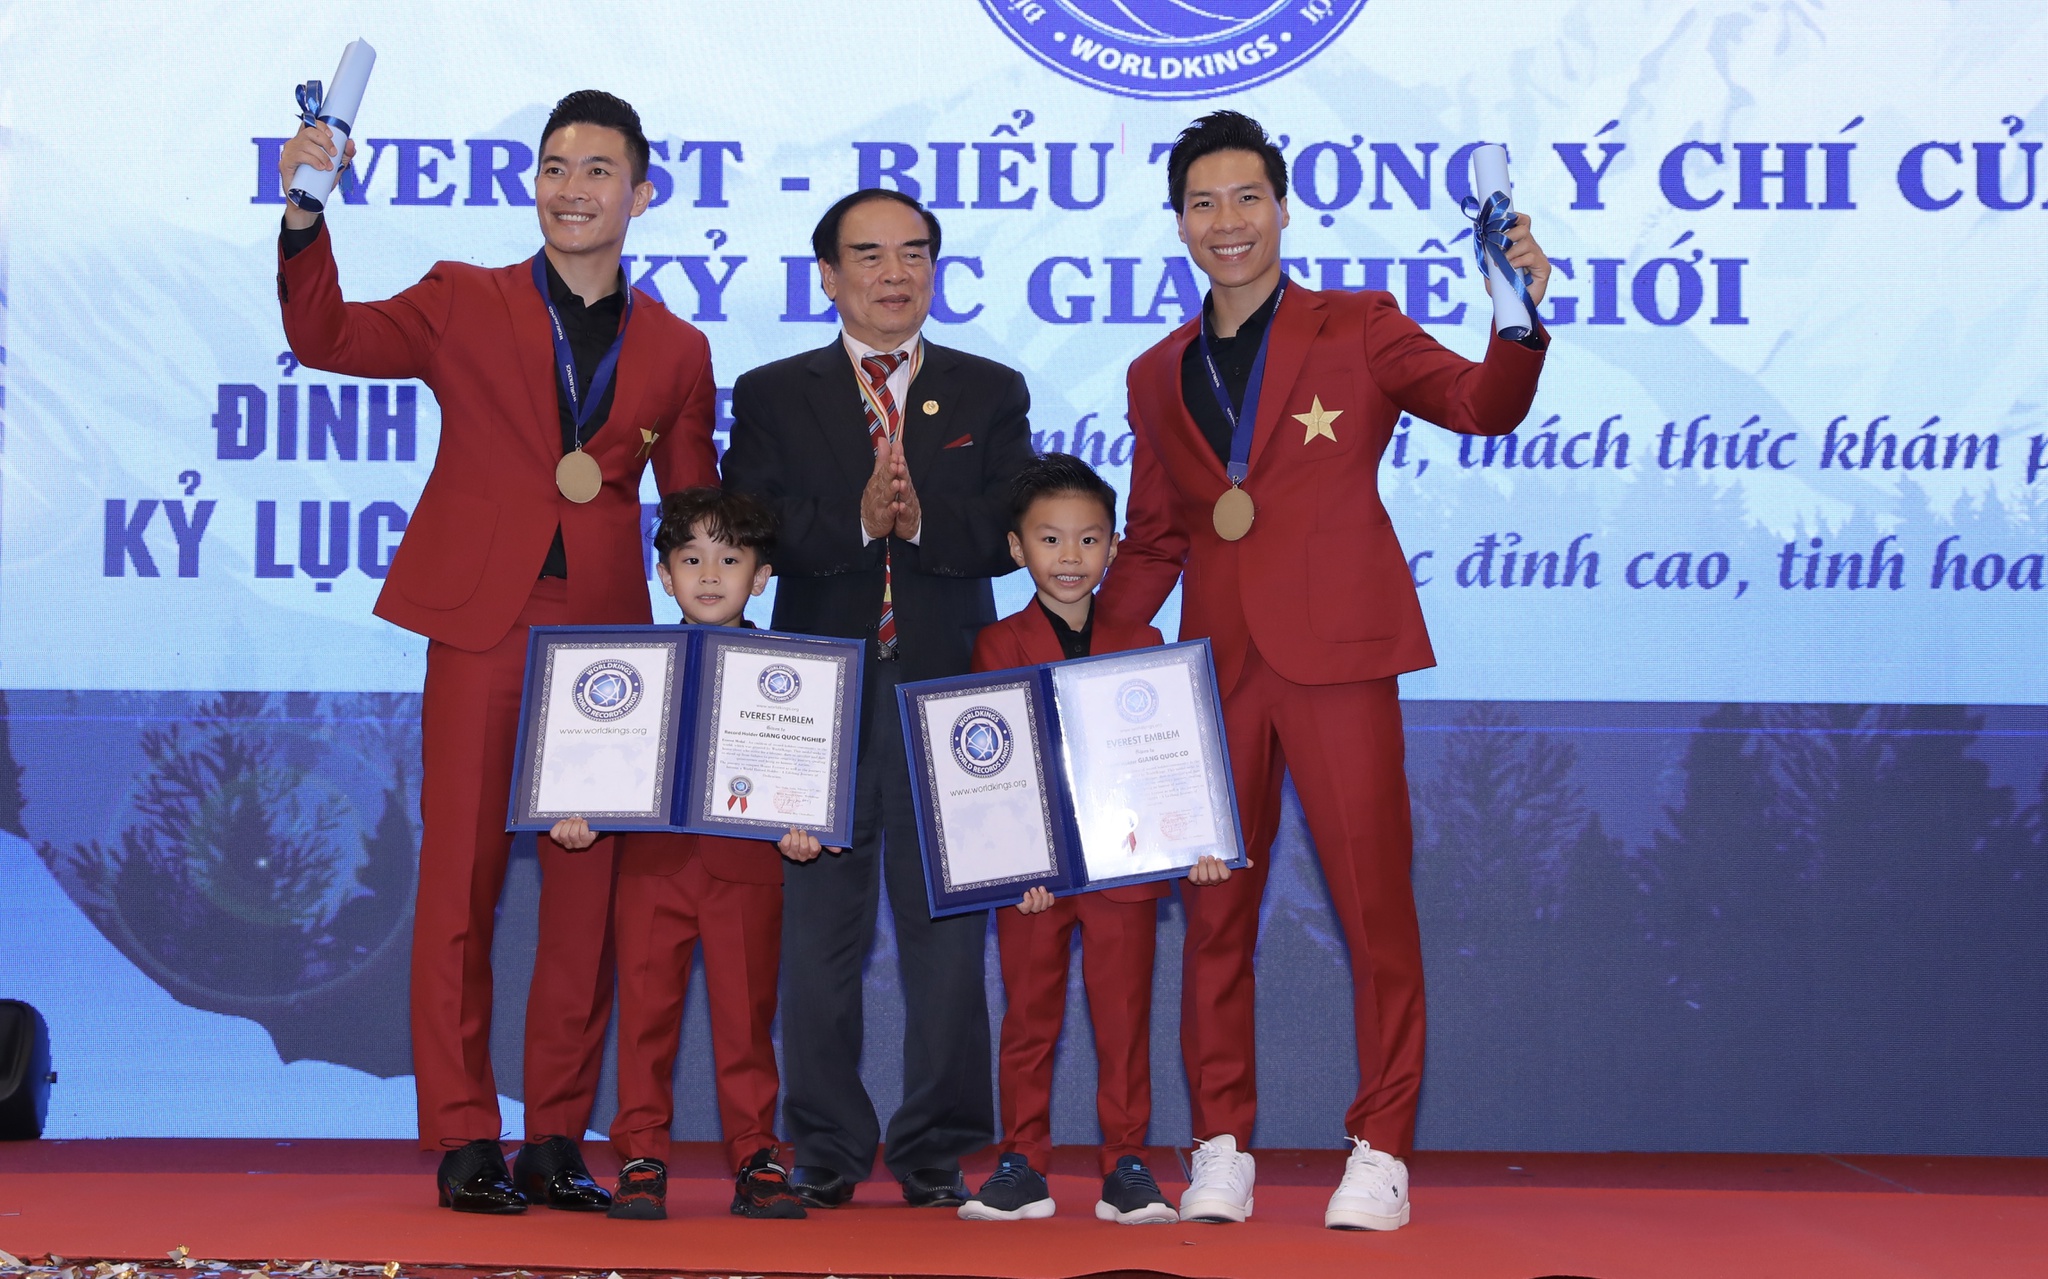 Con trai Quốc Cơ - Quốc Nghiệp phá kỷ lục Guinness Việt Nam - ảnh 1